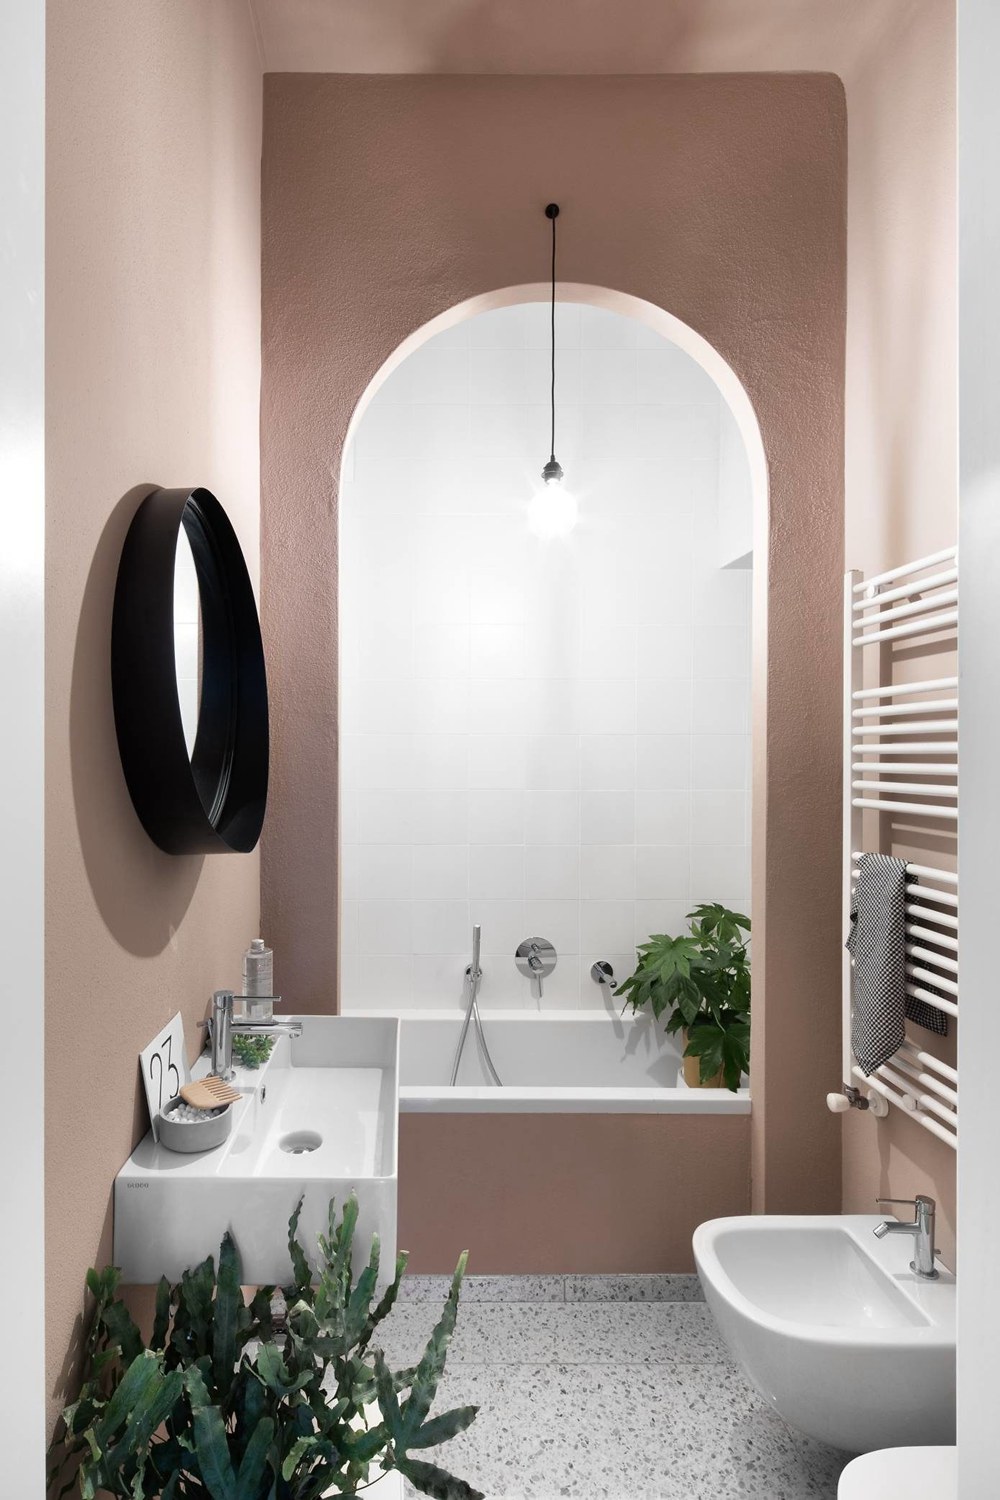 卫浴空间以粉色为主，浴缸处再次出现拱形门设计，尽显优雅浪漫，提升了整体格调。